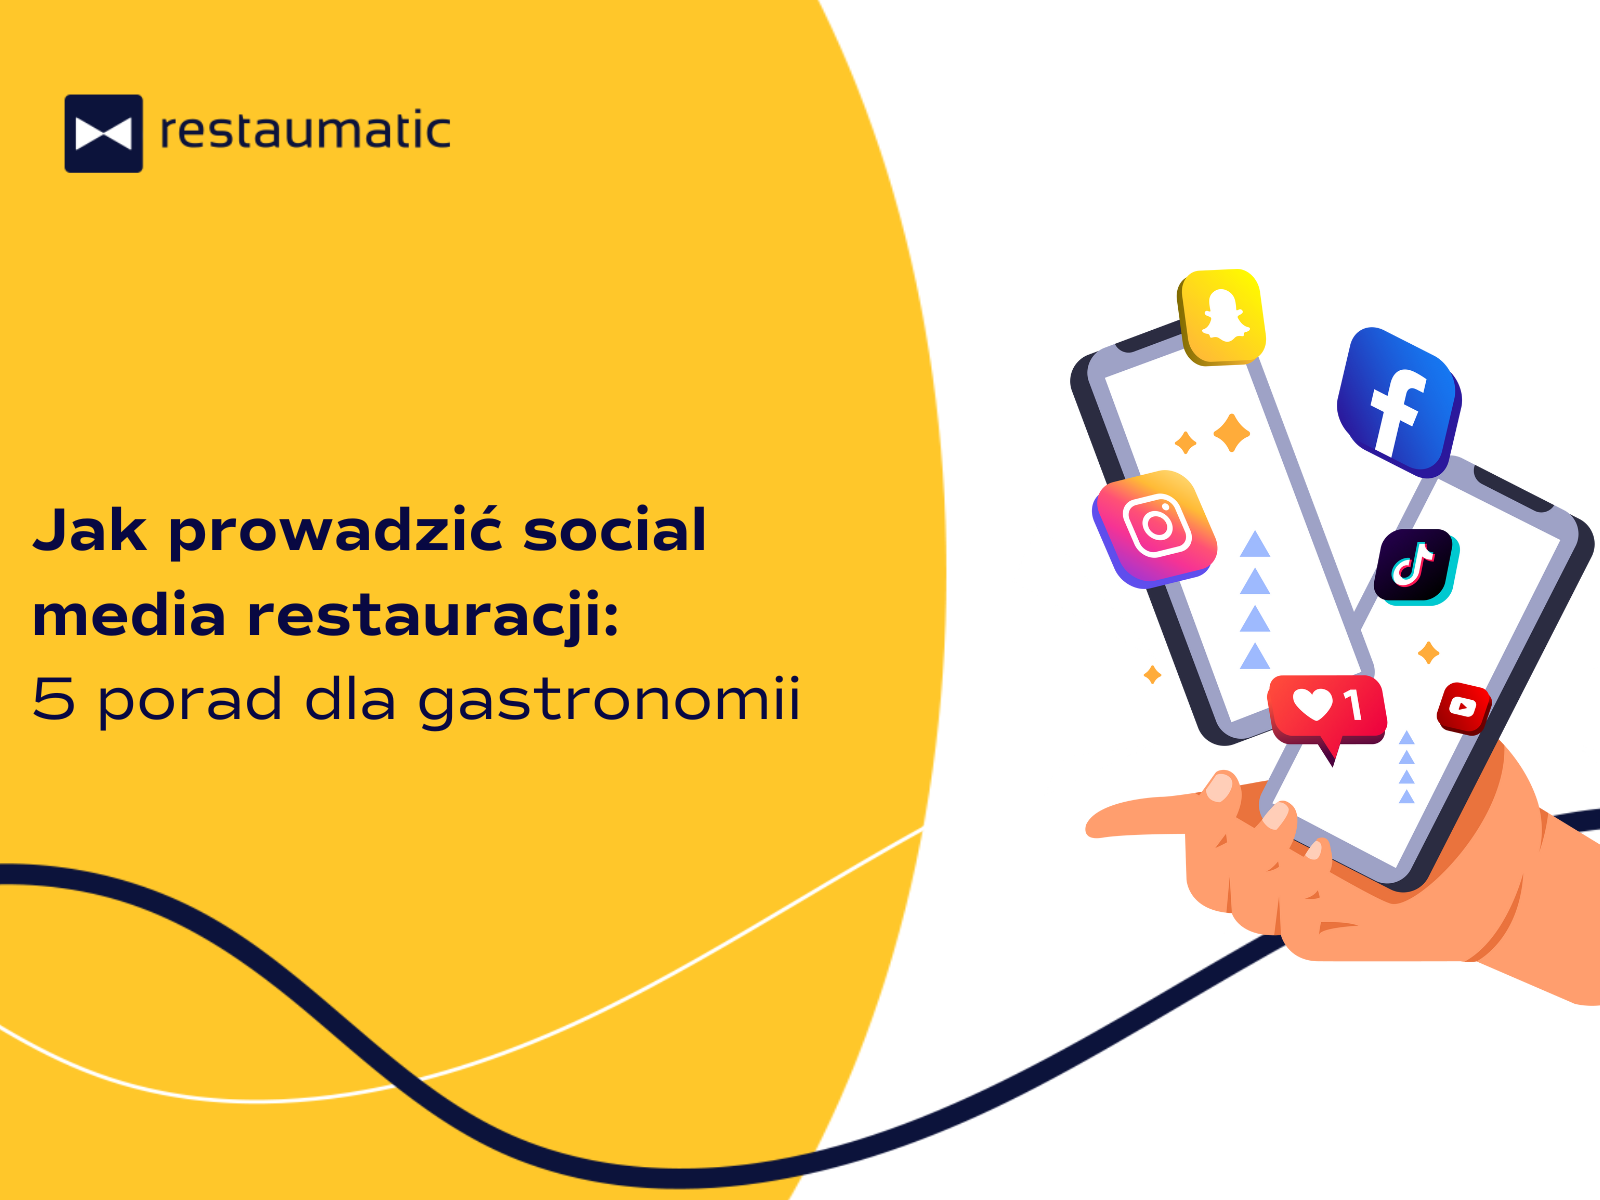 Jak prowadzić social media restauracji? 5 porad dla gastronomii